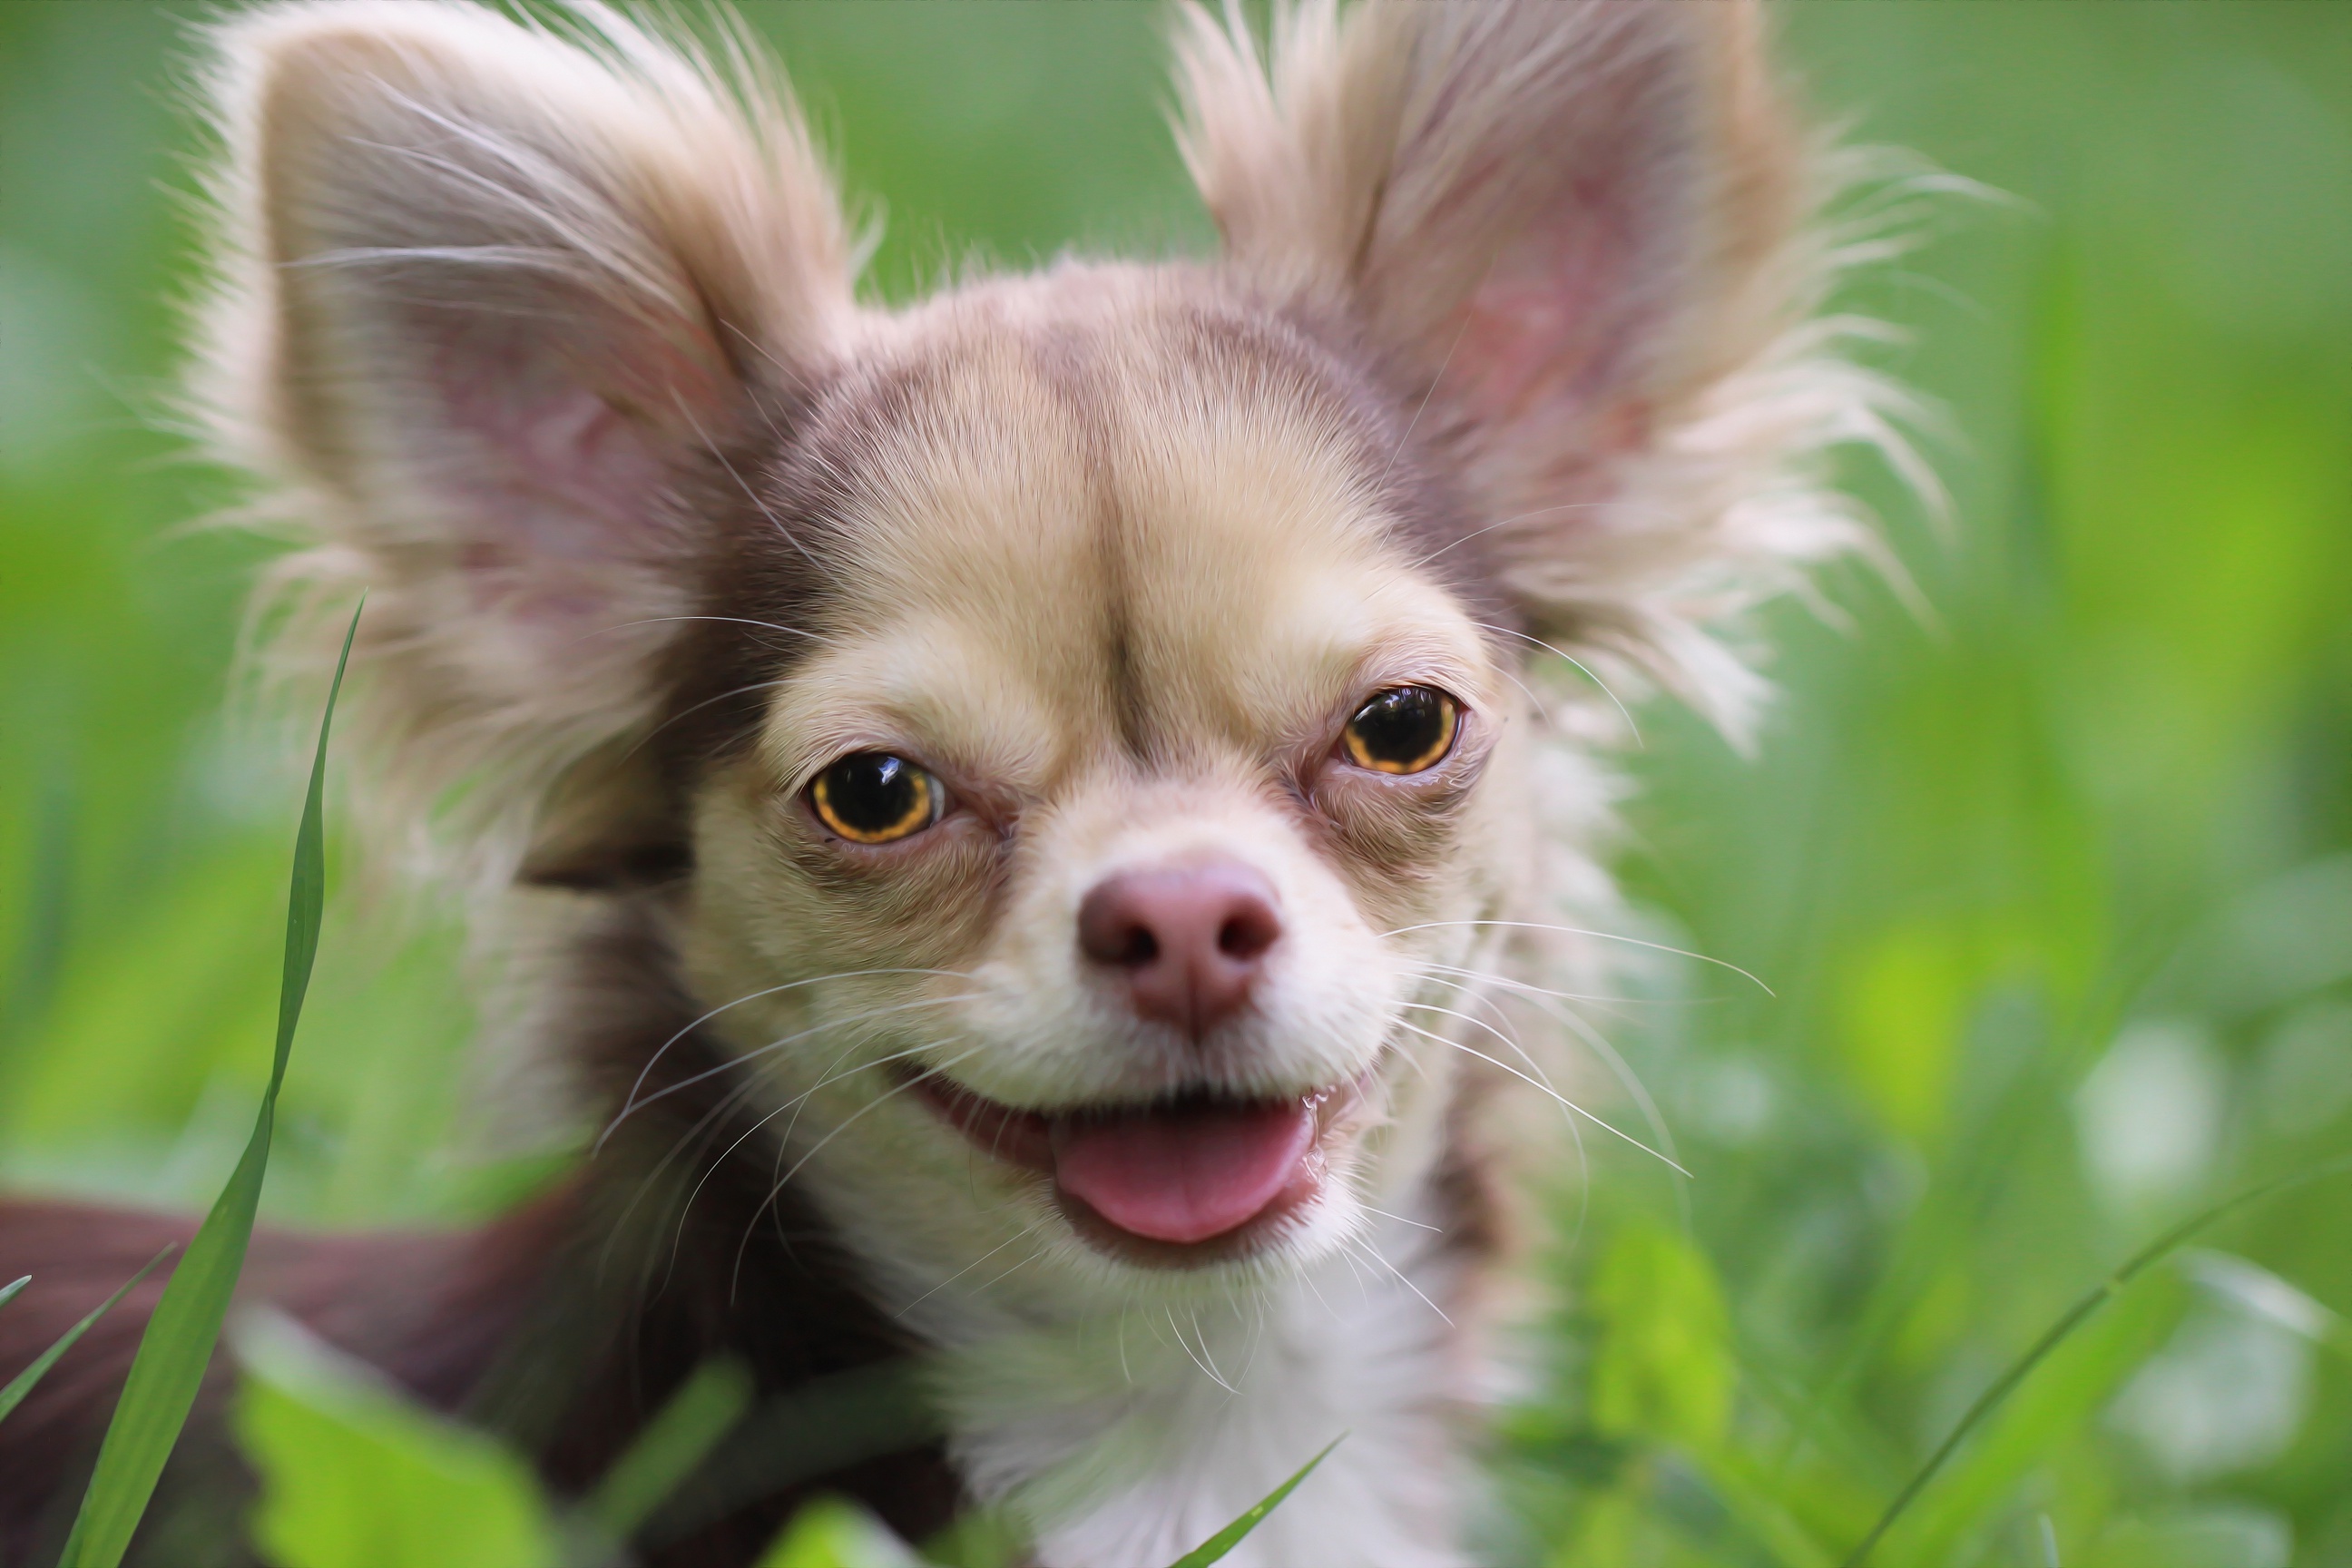 Descarga gratuita de fondo de pantalla para móvil de Animales, Perros, Chihuahua.